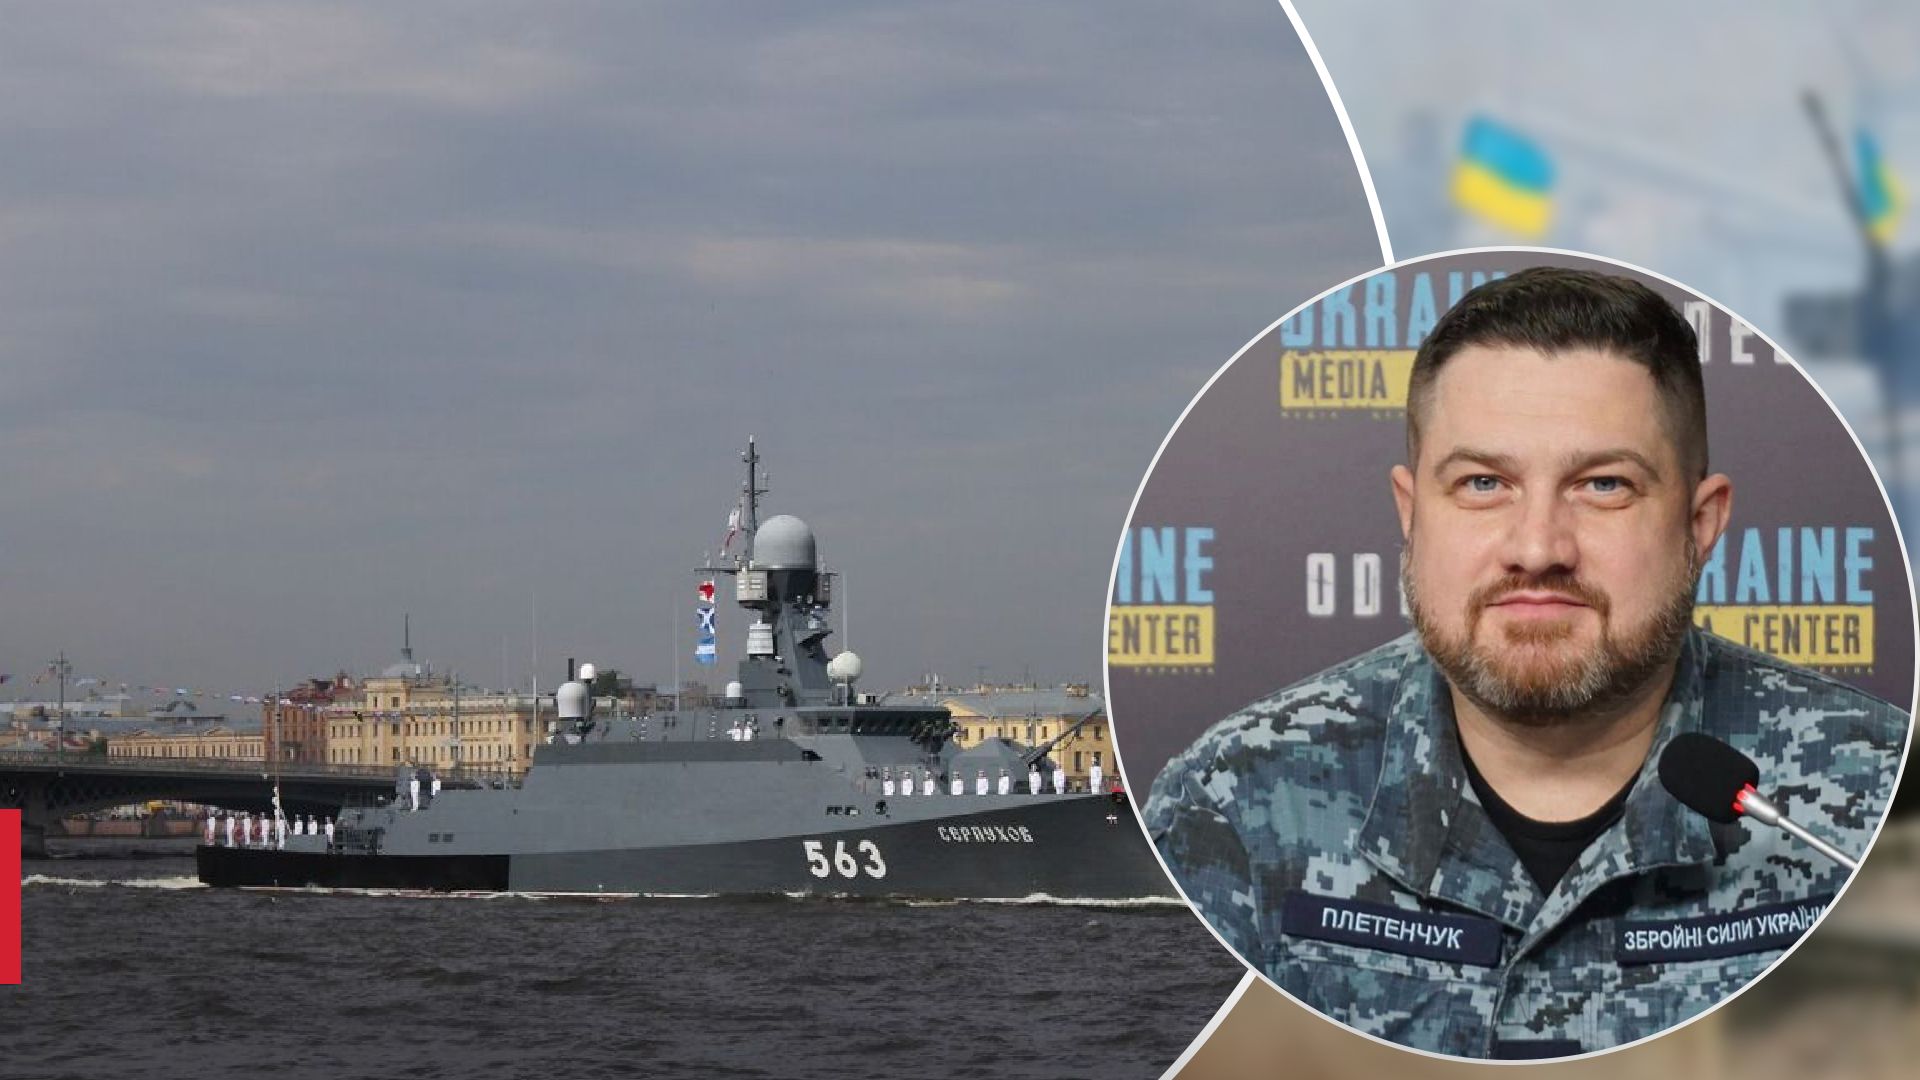 Вийшов з ладу: Плетенчук розповів про пошкодження російського корабля Сєрпухов - 24 Канал